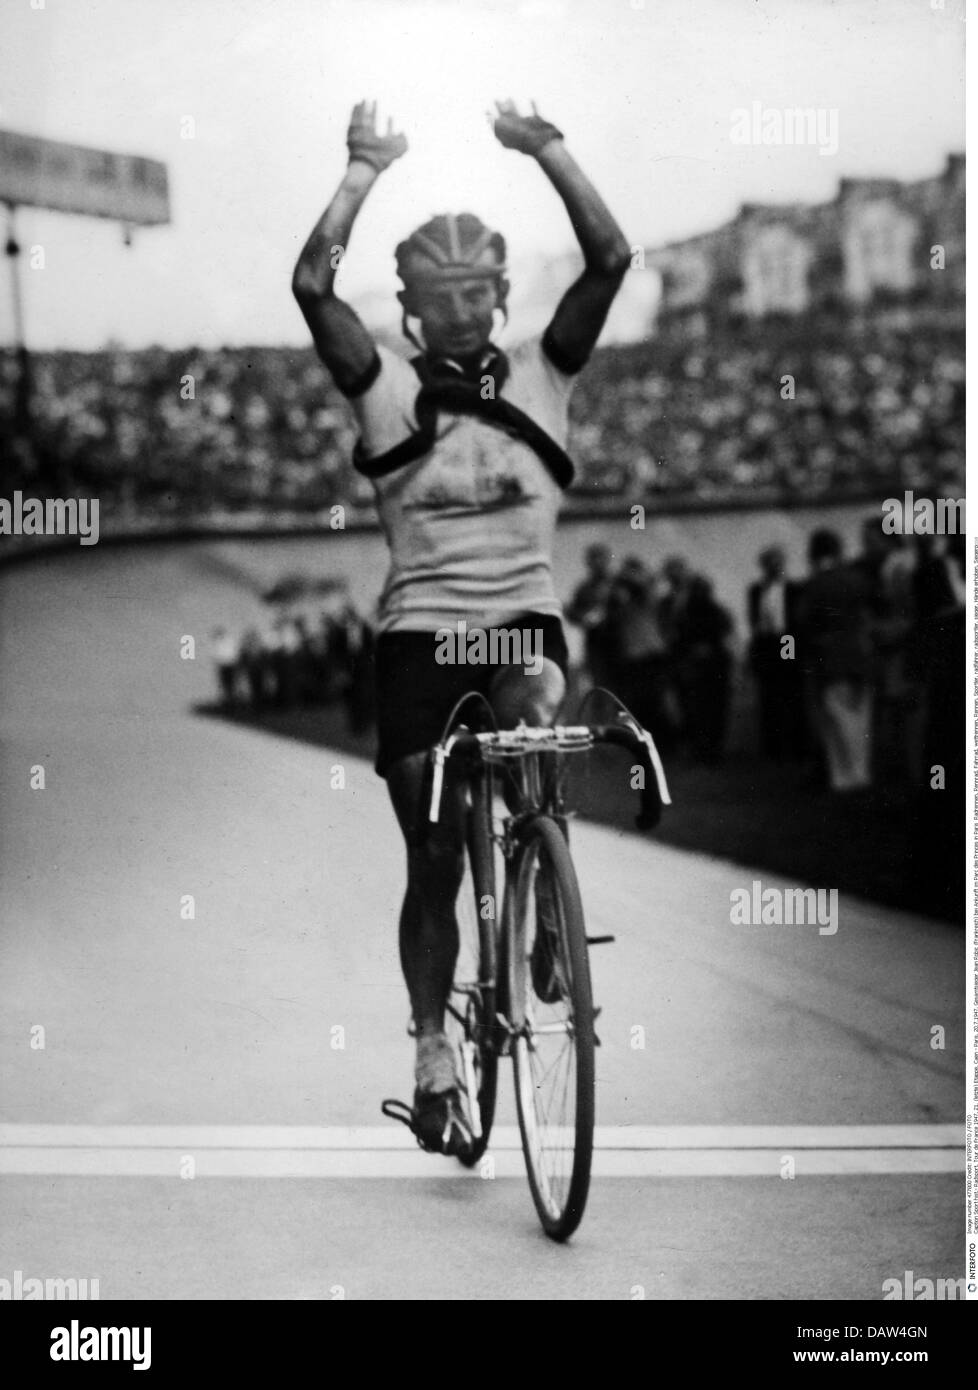 Sport, ciclismo, Tour de France, 1947, 21a tappa, Caen - Parigi, 20.7.1947, vincitore completo Jean Robic (Francia), arrivo a Parc des Princes, Parigi, 1940, 40, 20° secolo, storico, storico, corsa in bicicletta, corse in bicicletta, corsa, corsa, bici da corsa, atleta, sportivo, ciclista, ciclisti, ciclisti, ciclisti, ciclisti, ciclisti, ciclisti, ciclisti, ciclisti, ciclisti, ciclisti, ciclisti, ciclisti, ciclisti, ciclisti, ciclisti, ciclisti, ciclisti, ciclisti, ciclisti, ciclisti, Ciclisti, vincenti, segno di mano, mani, alzarsi, segno di mano, gesto, gesti, gestualità, linguaggio del corpo, braccia, finisci, croce la linea di finitura, persone, diritti aggiuntivi-clearences-non disponibile Foto Stock